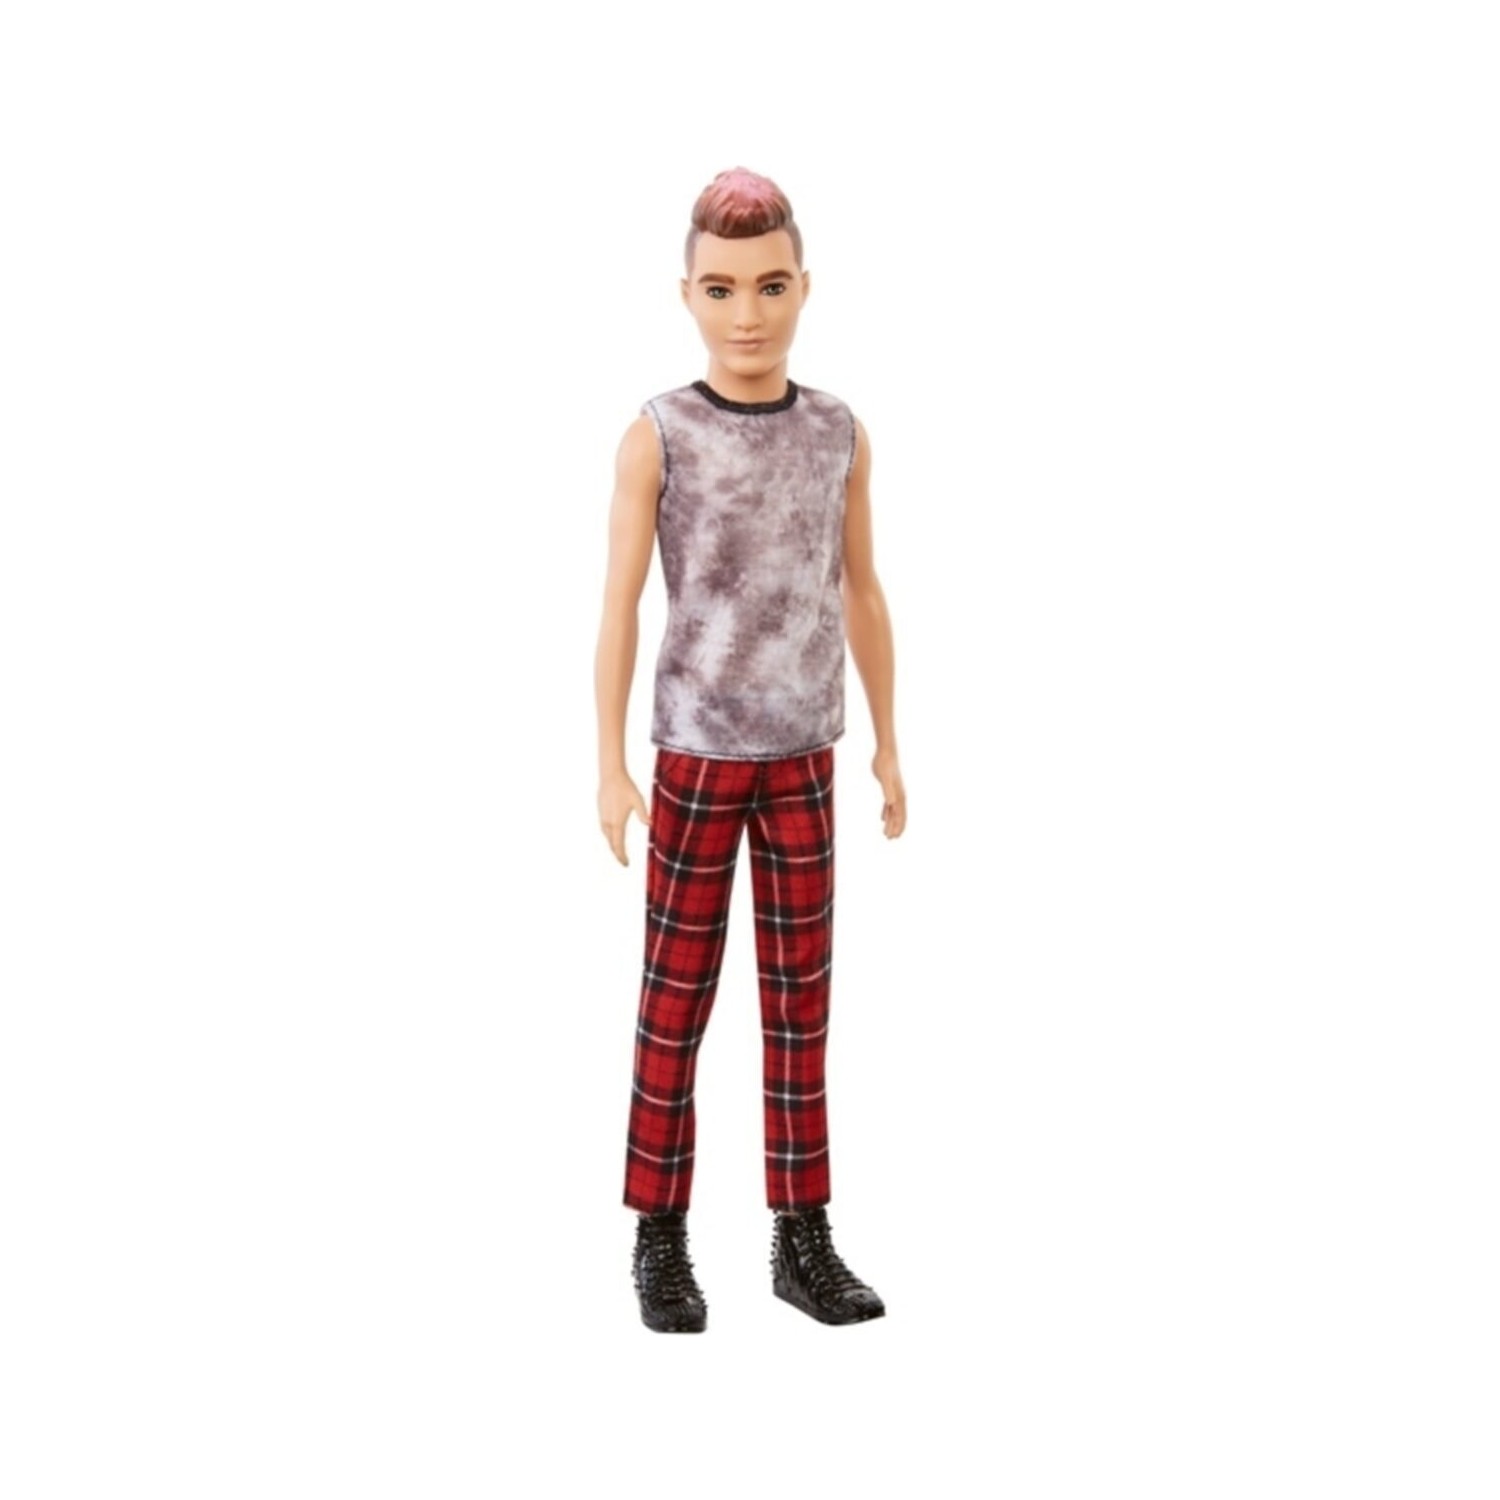 Кукла Barbie Красавчик Кен DWK44 один комплект куклы кен мужской костюм одежда для принца куклы кен аксессуары для вечеринки модный наряд для парня